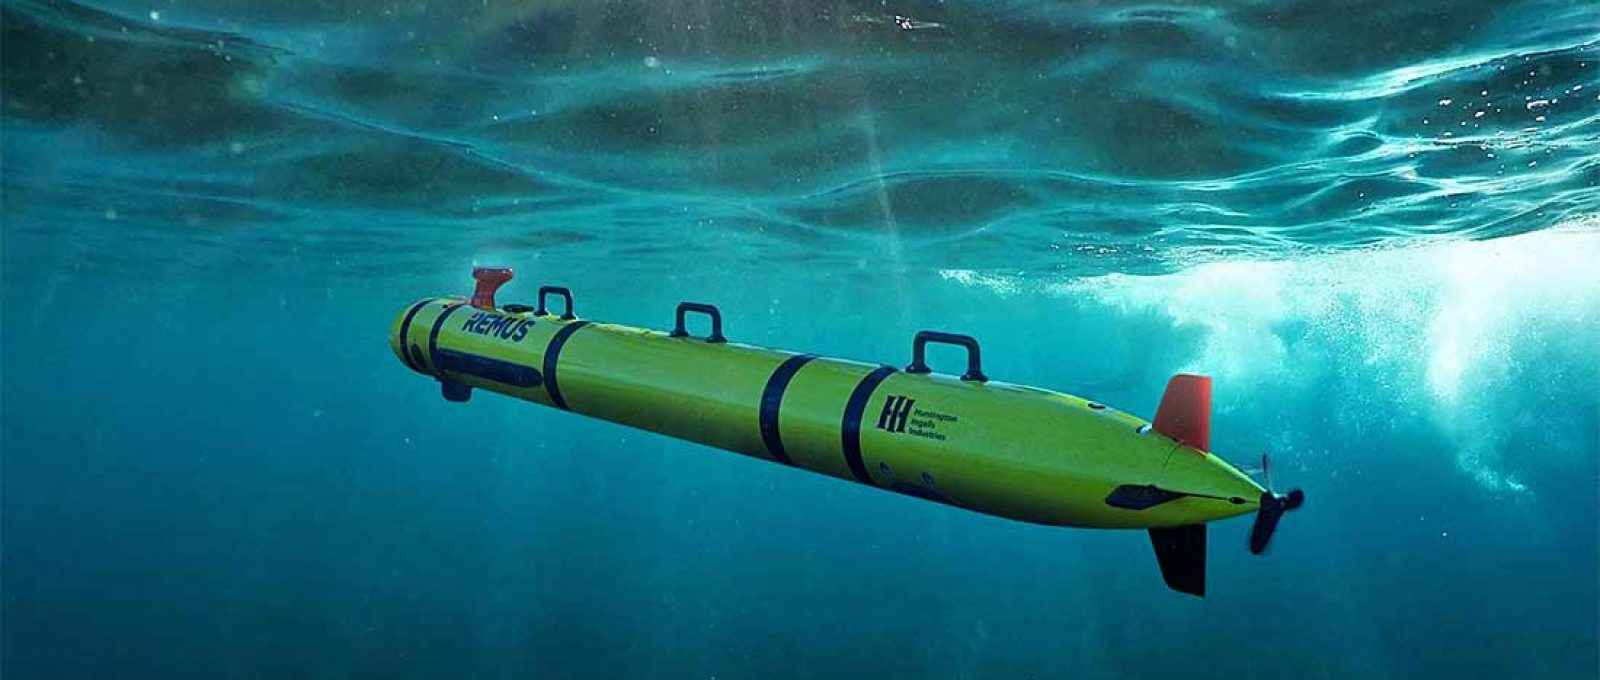 Representação artística do veículo subaquático não tripulado REMUS 300 (Imagem: Huntington Ingalls Industries).